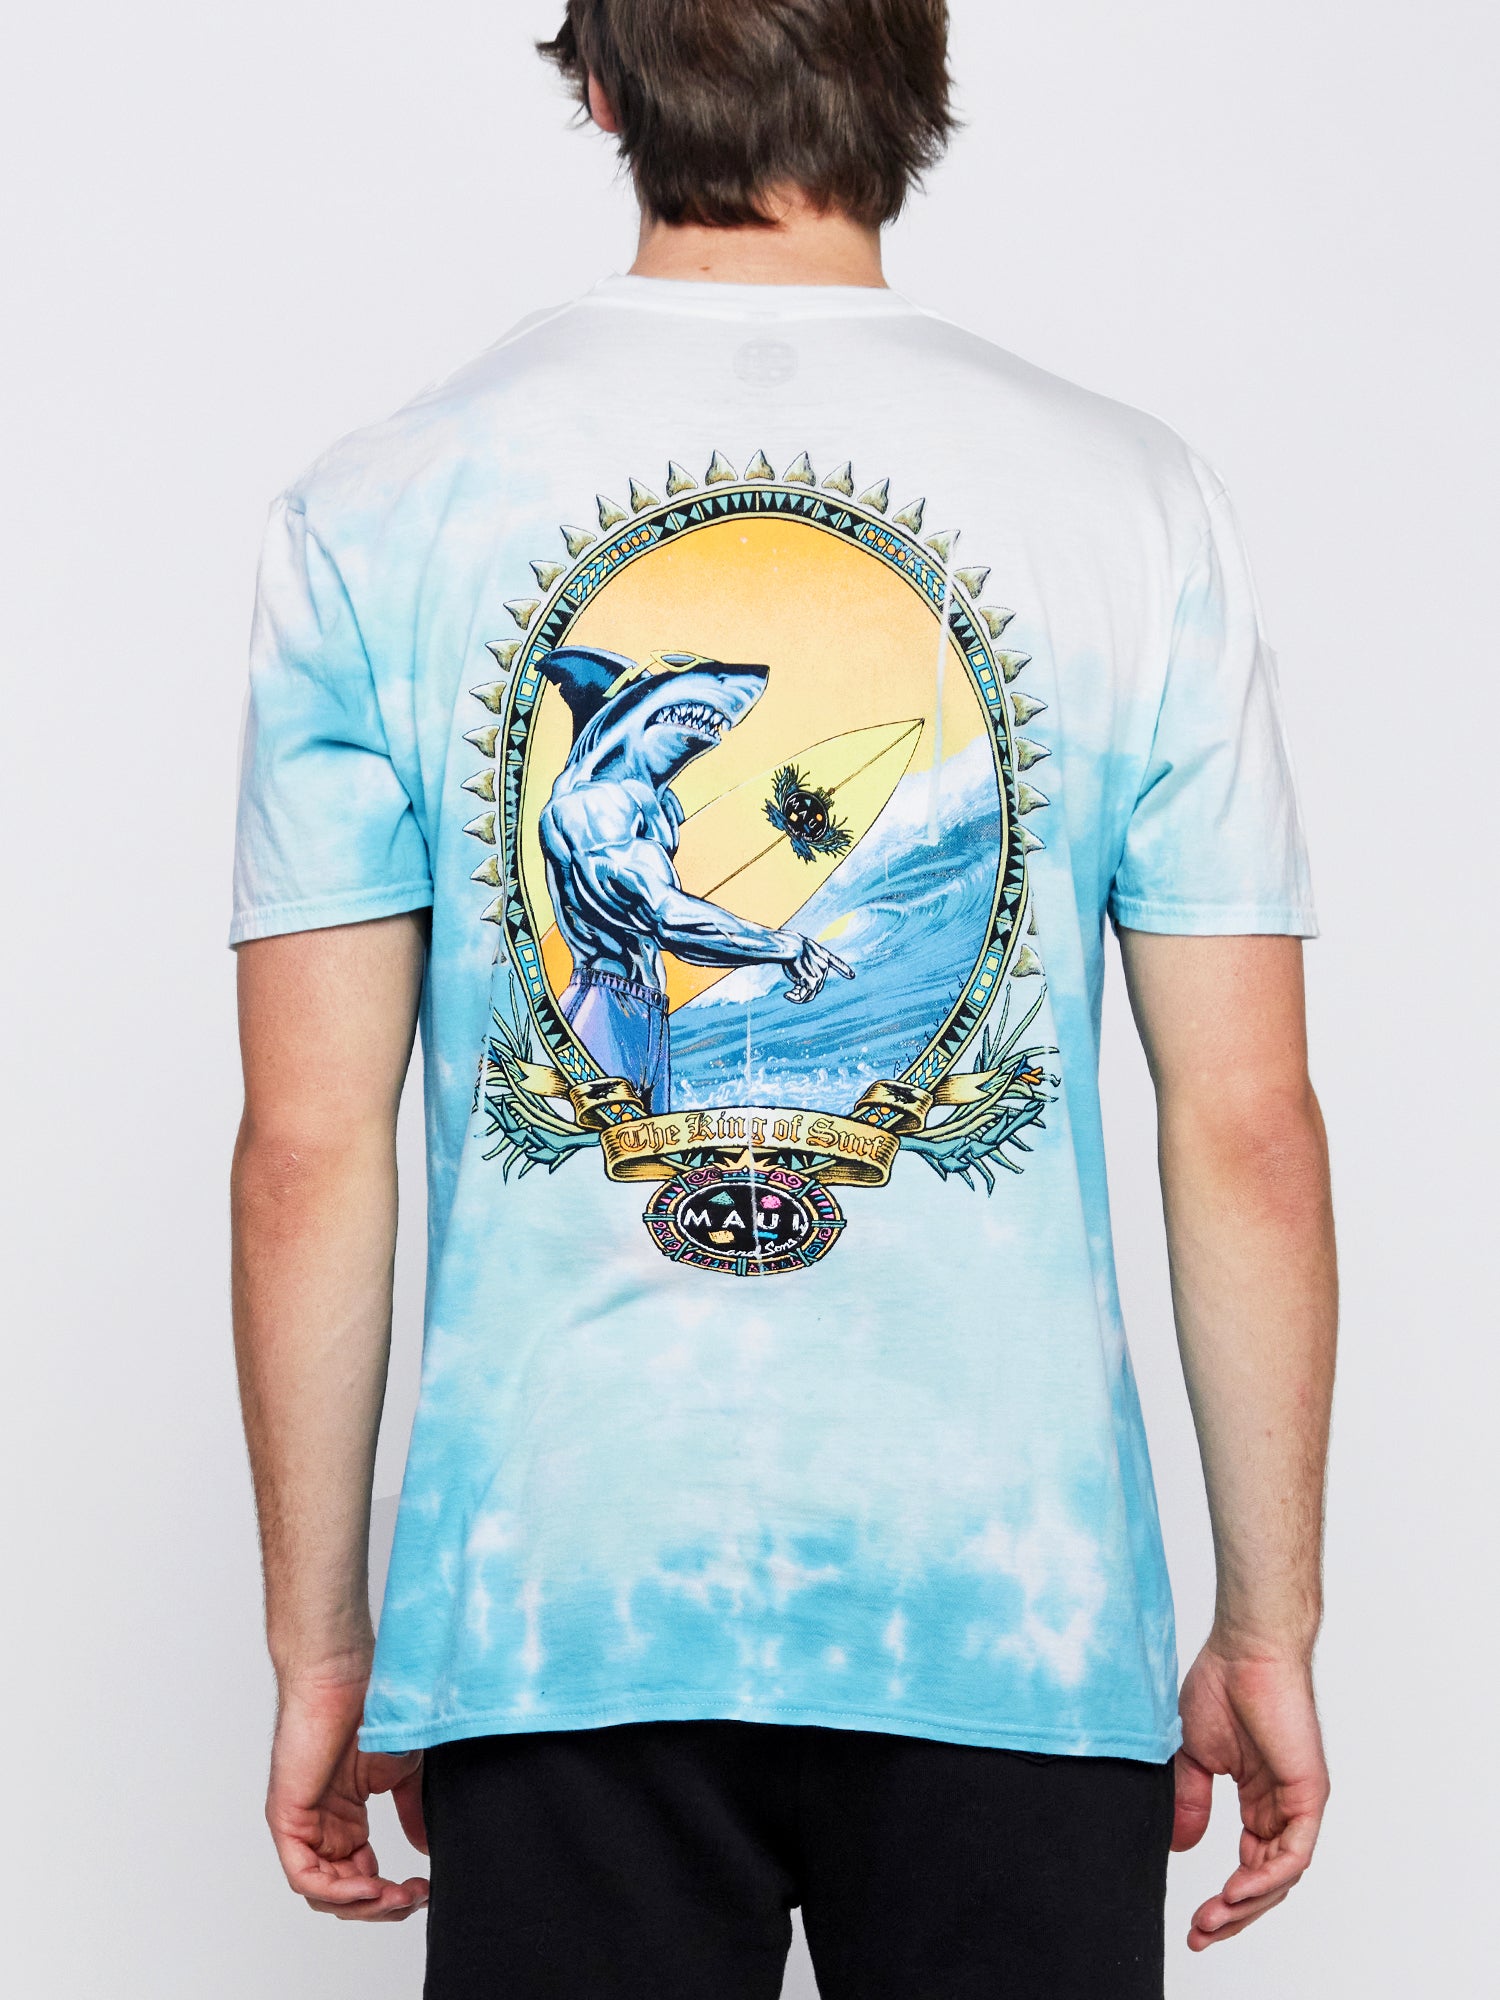 King Shark T-Shirt